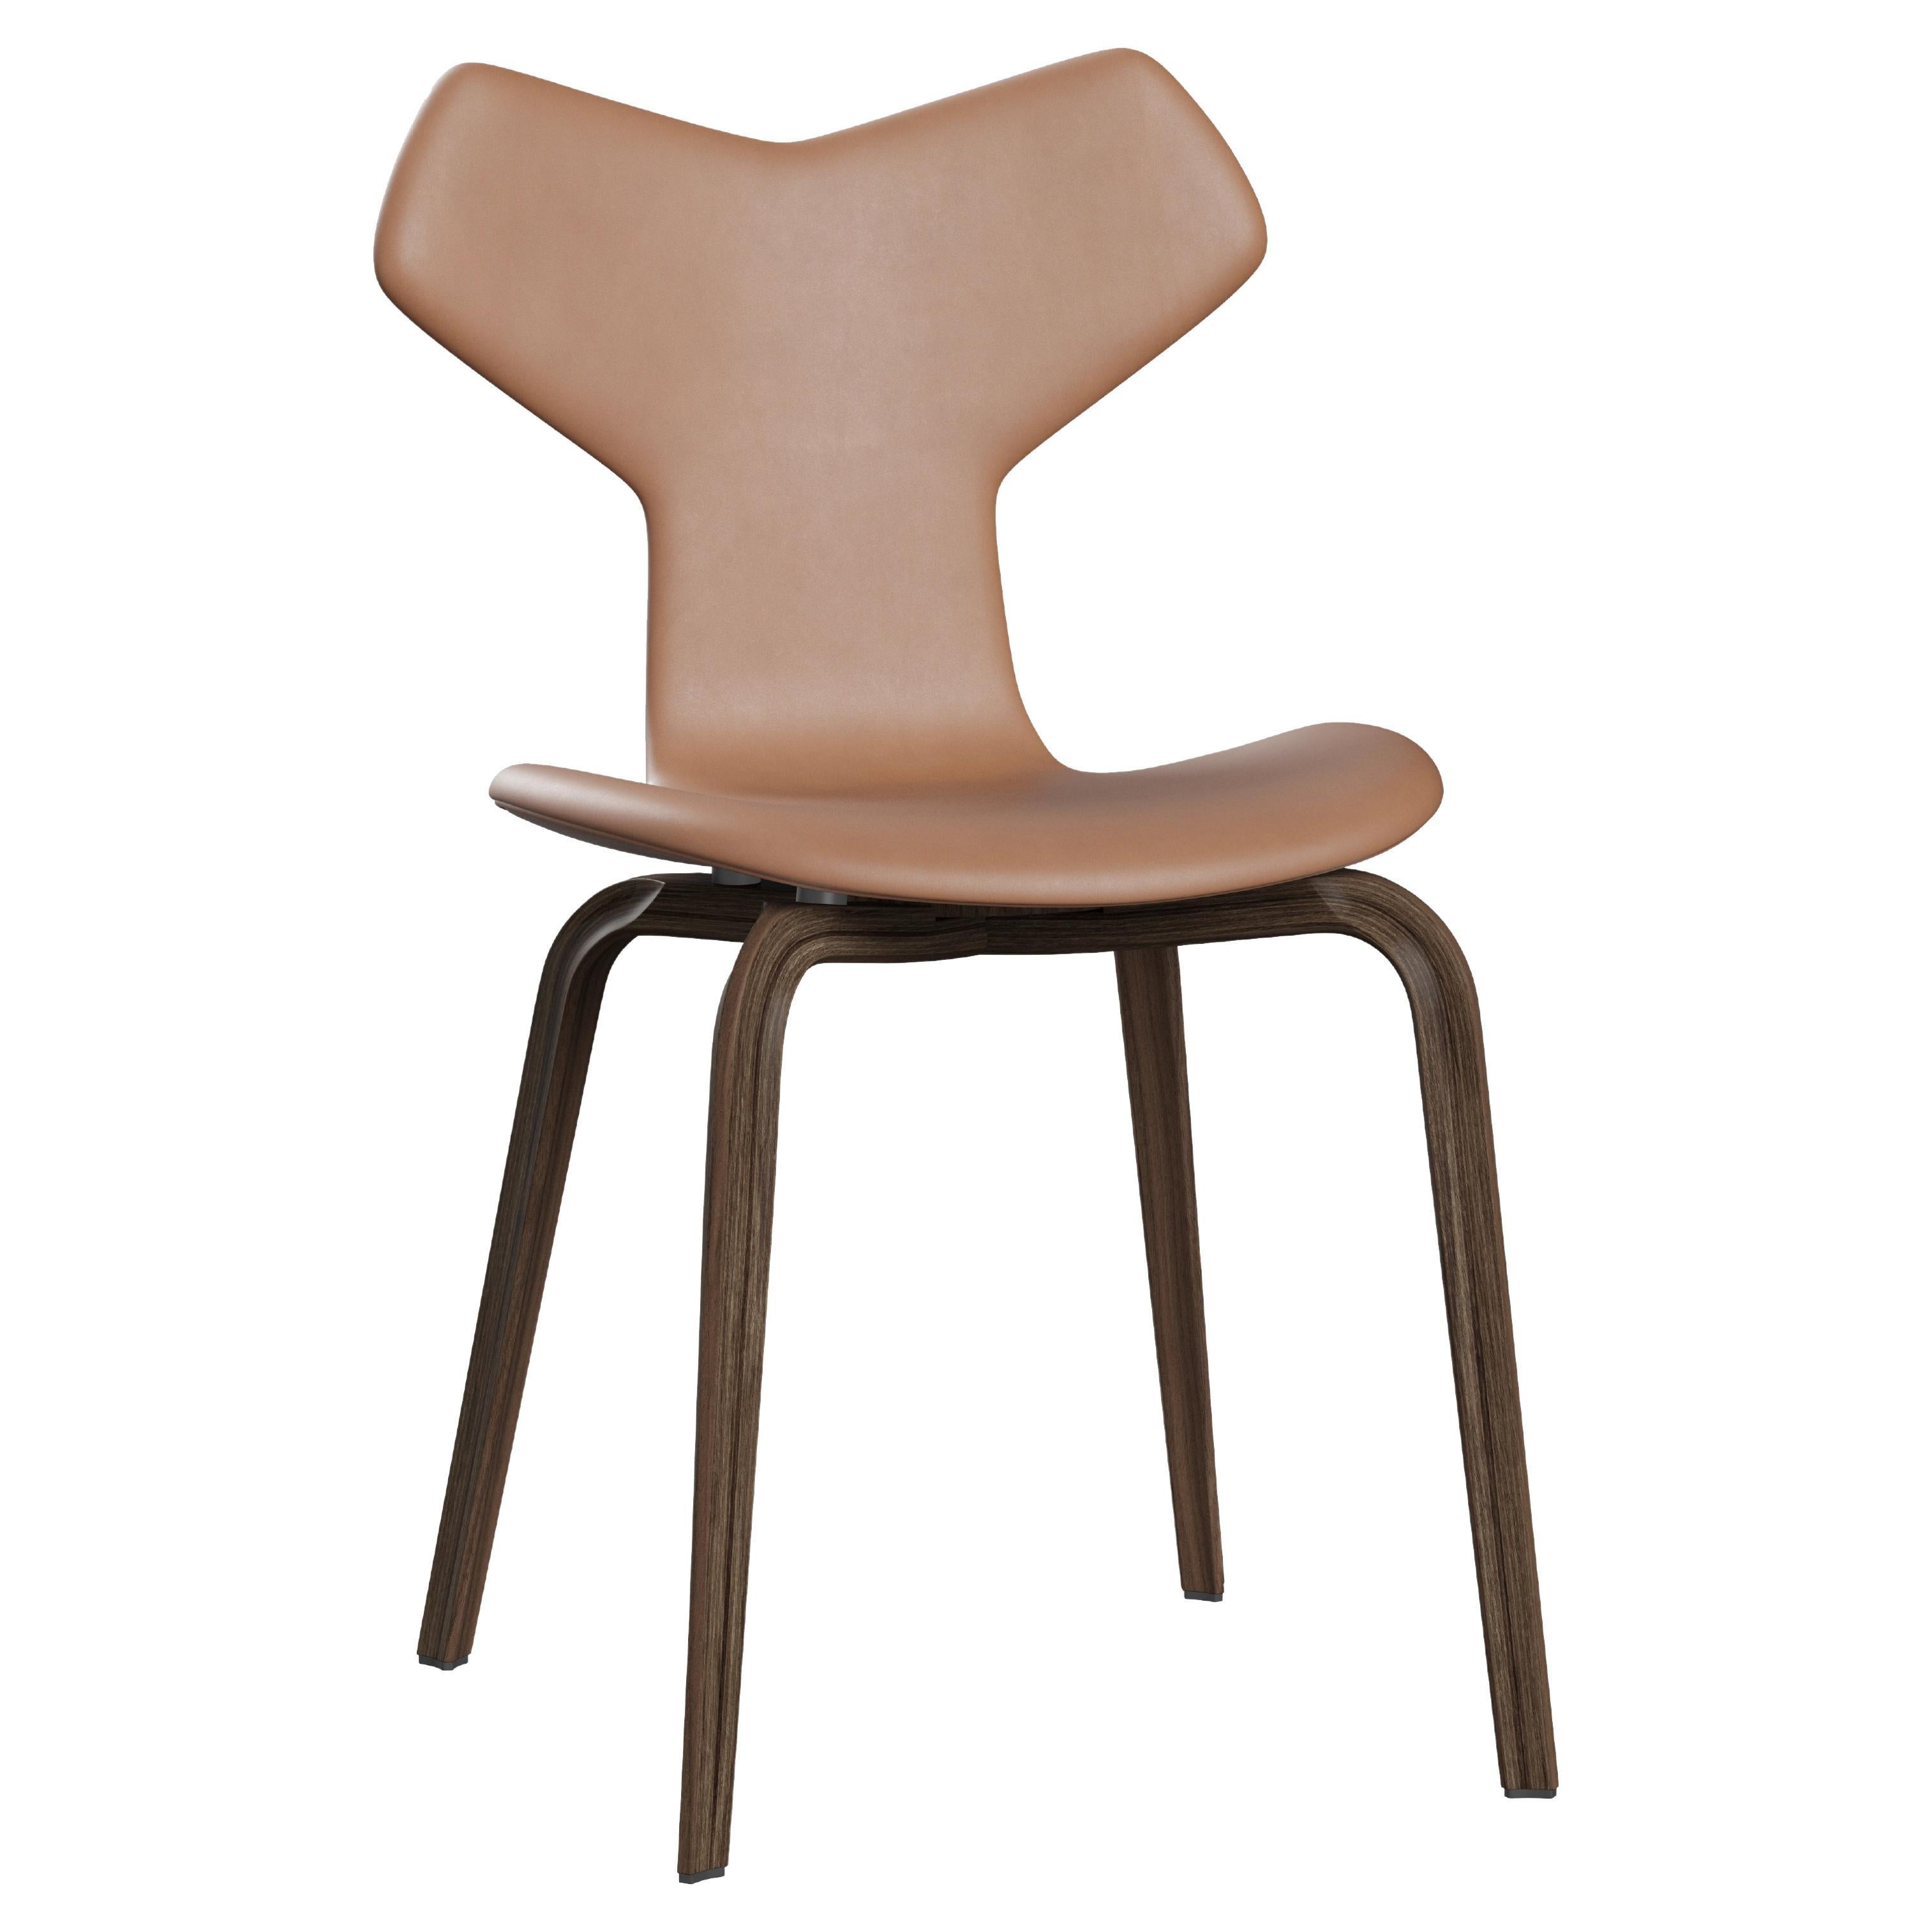 Arne Jacobsen 'Grand Prix' Chair for Fritz Hansen in Full Leather Upholstery For Sale